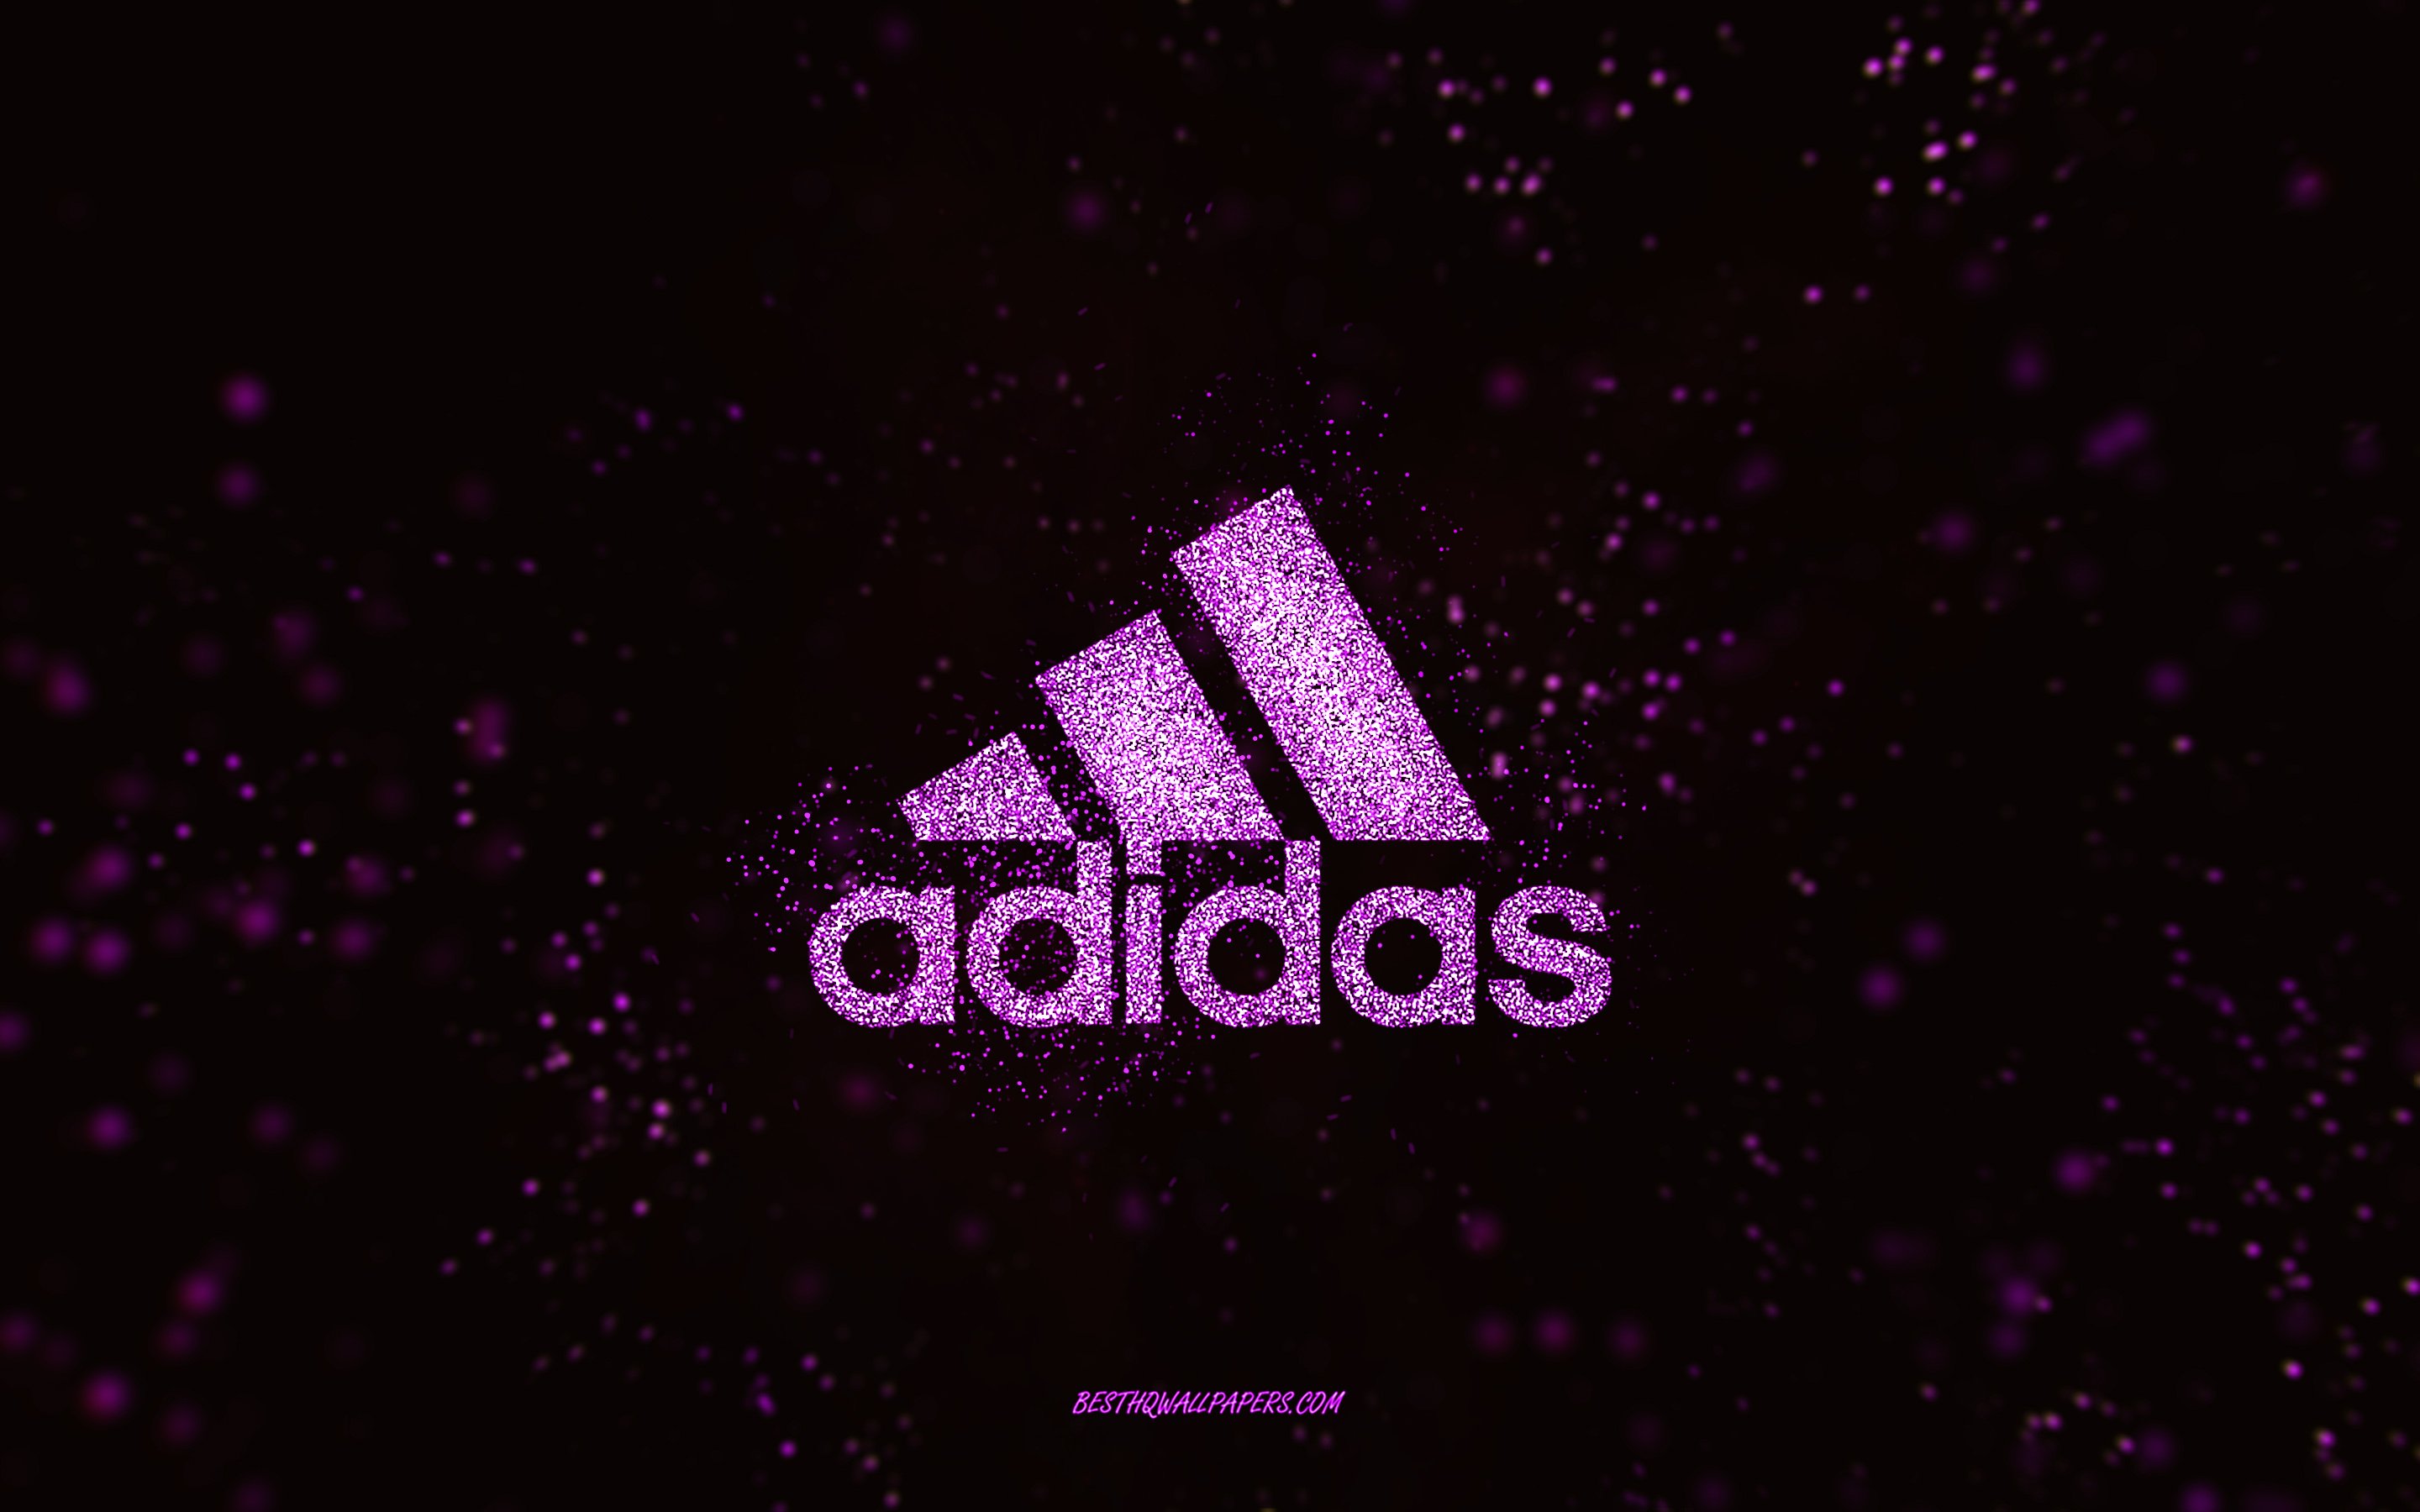 Descargar fondos de pantalla Logotipo de adidas brillo, 4k, fondo negro,  logotipo de Adidas, arte de brillo rosa, Adidas, arte creativo, logotipo de  brillo rosa de Adidas monitor con una resolución 2880x1800.